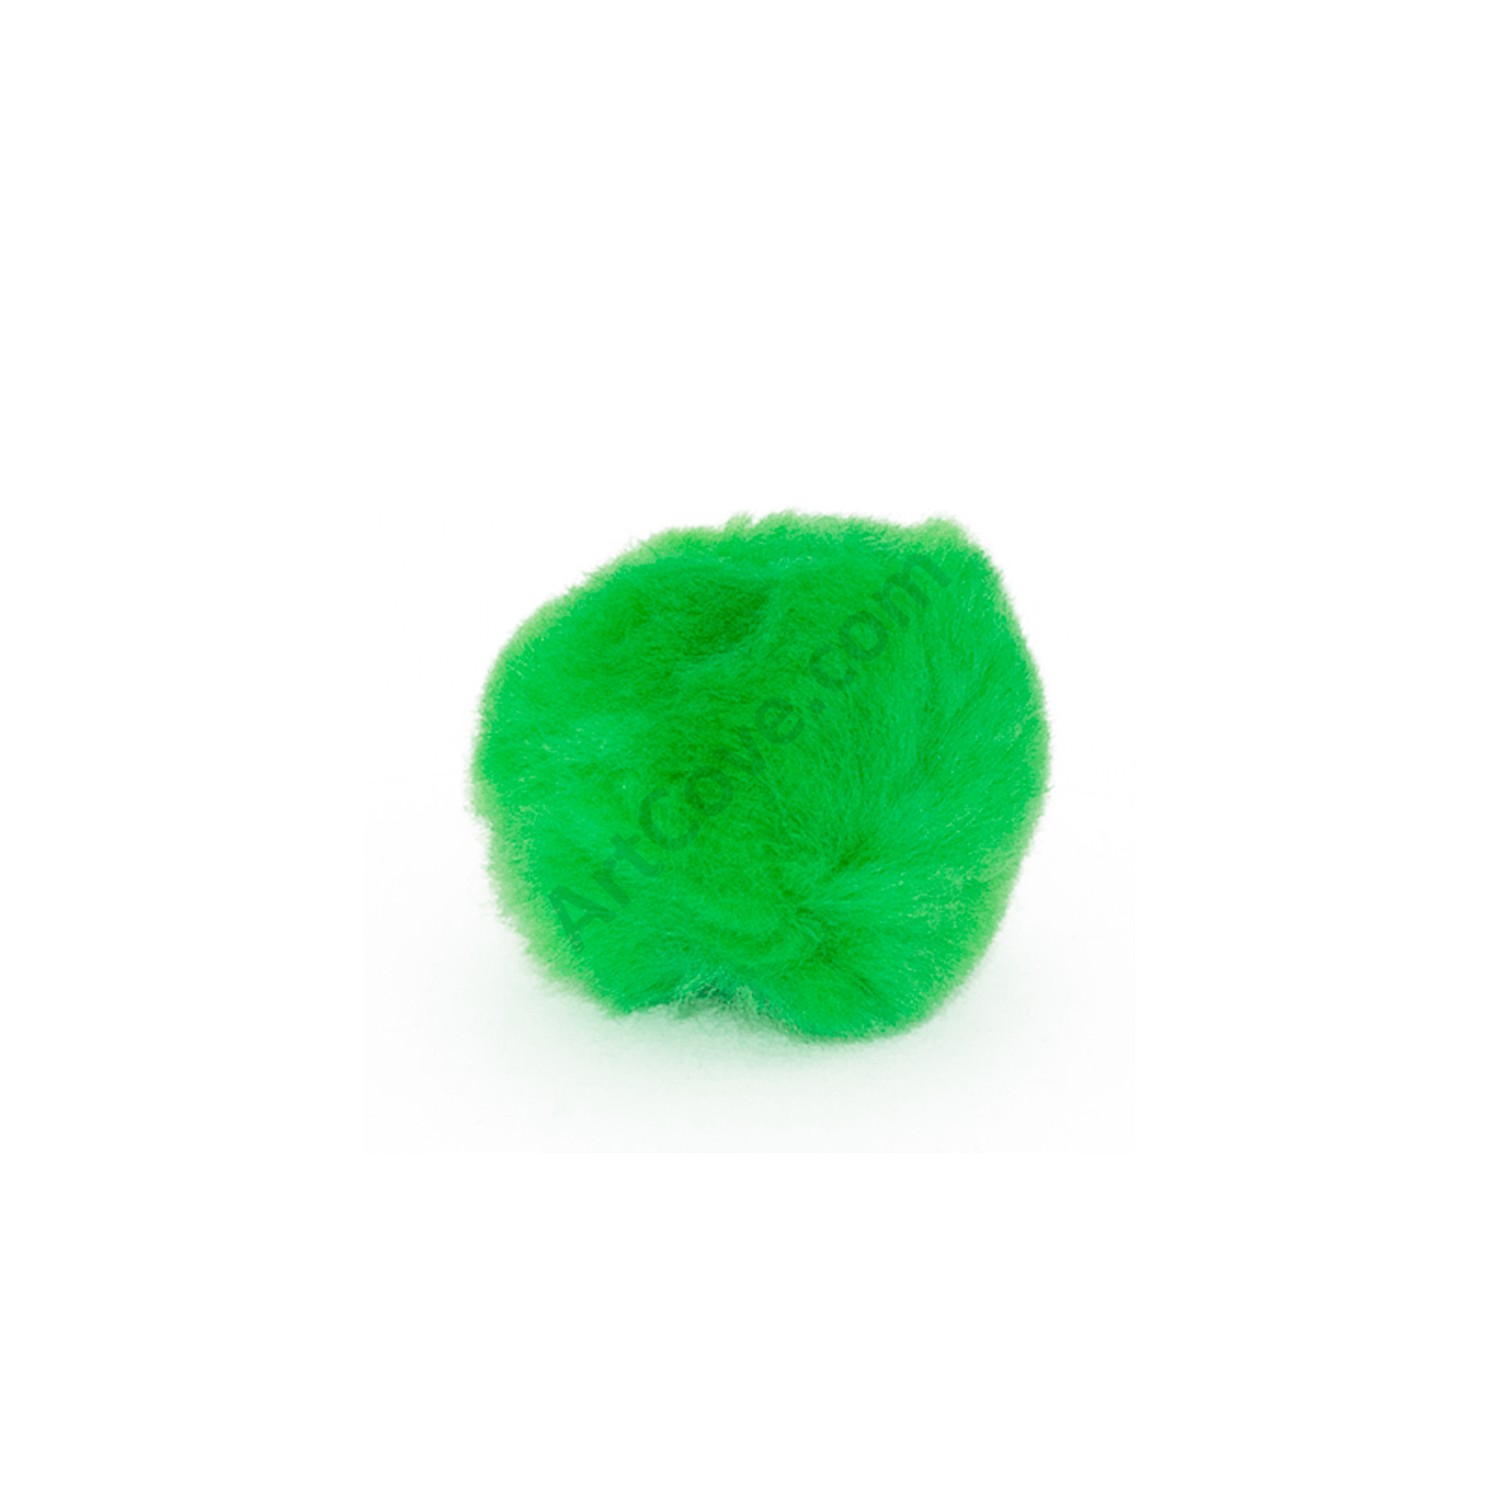 2 Inch Neon Green Craft Pom Poms